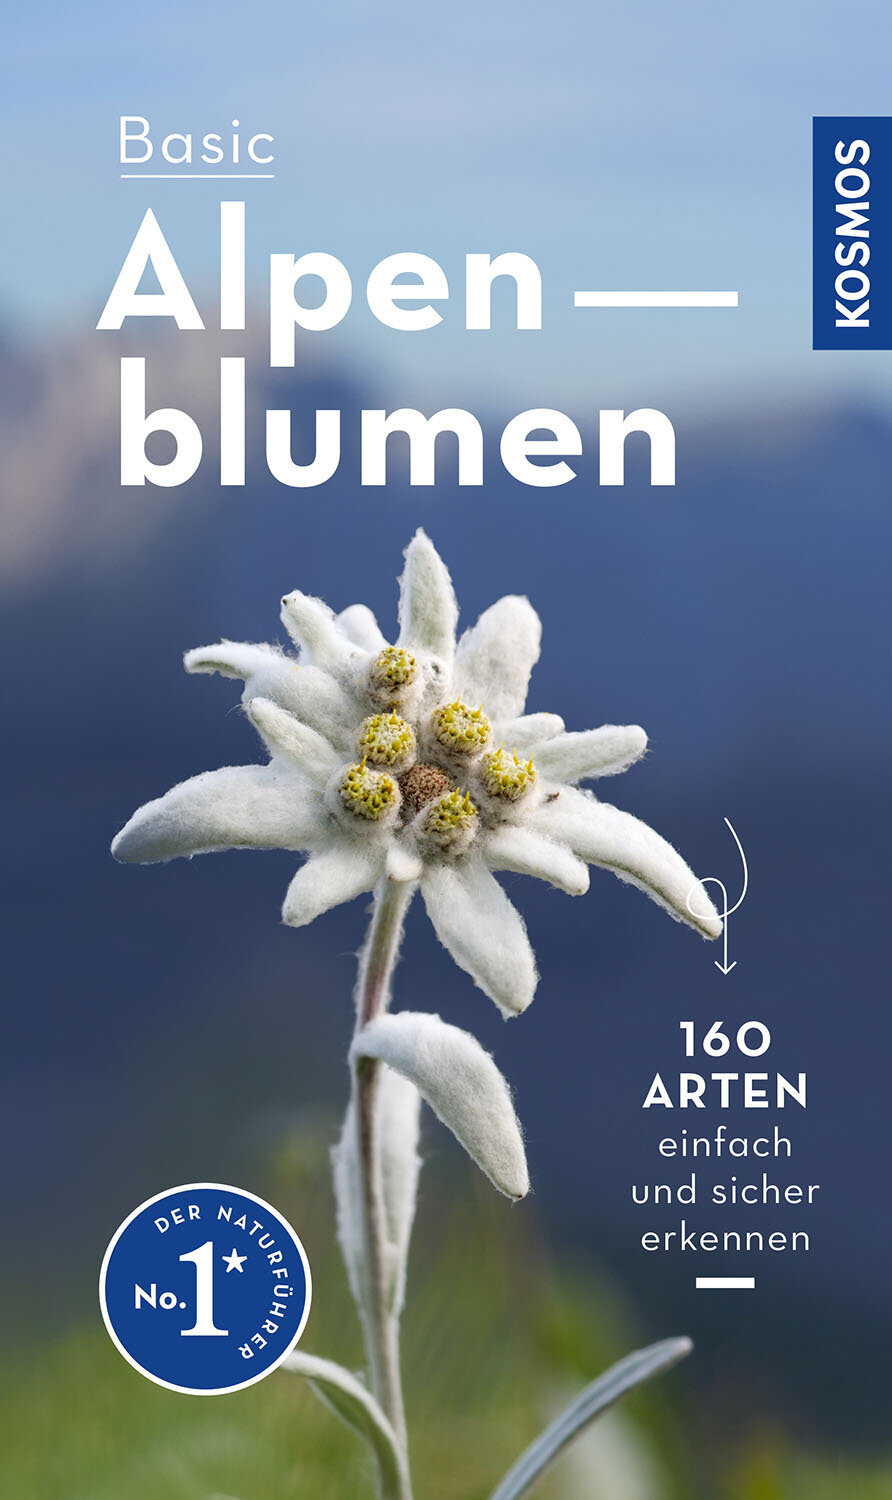 Basic Alpenblumen